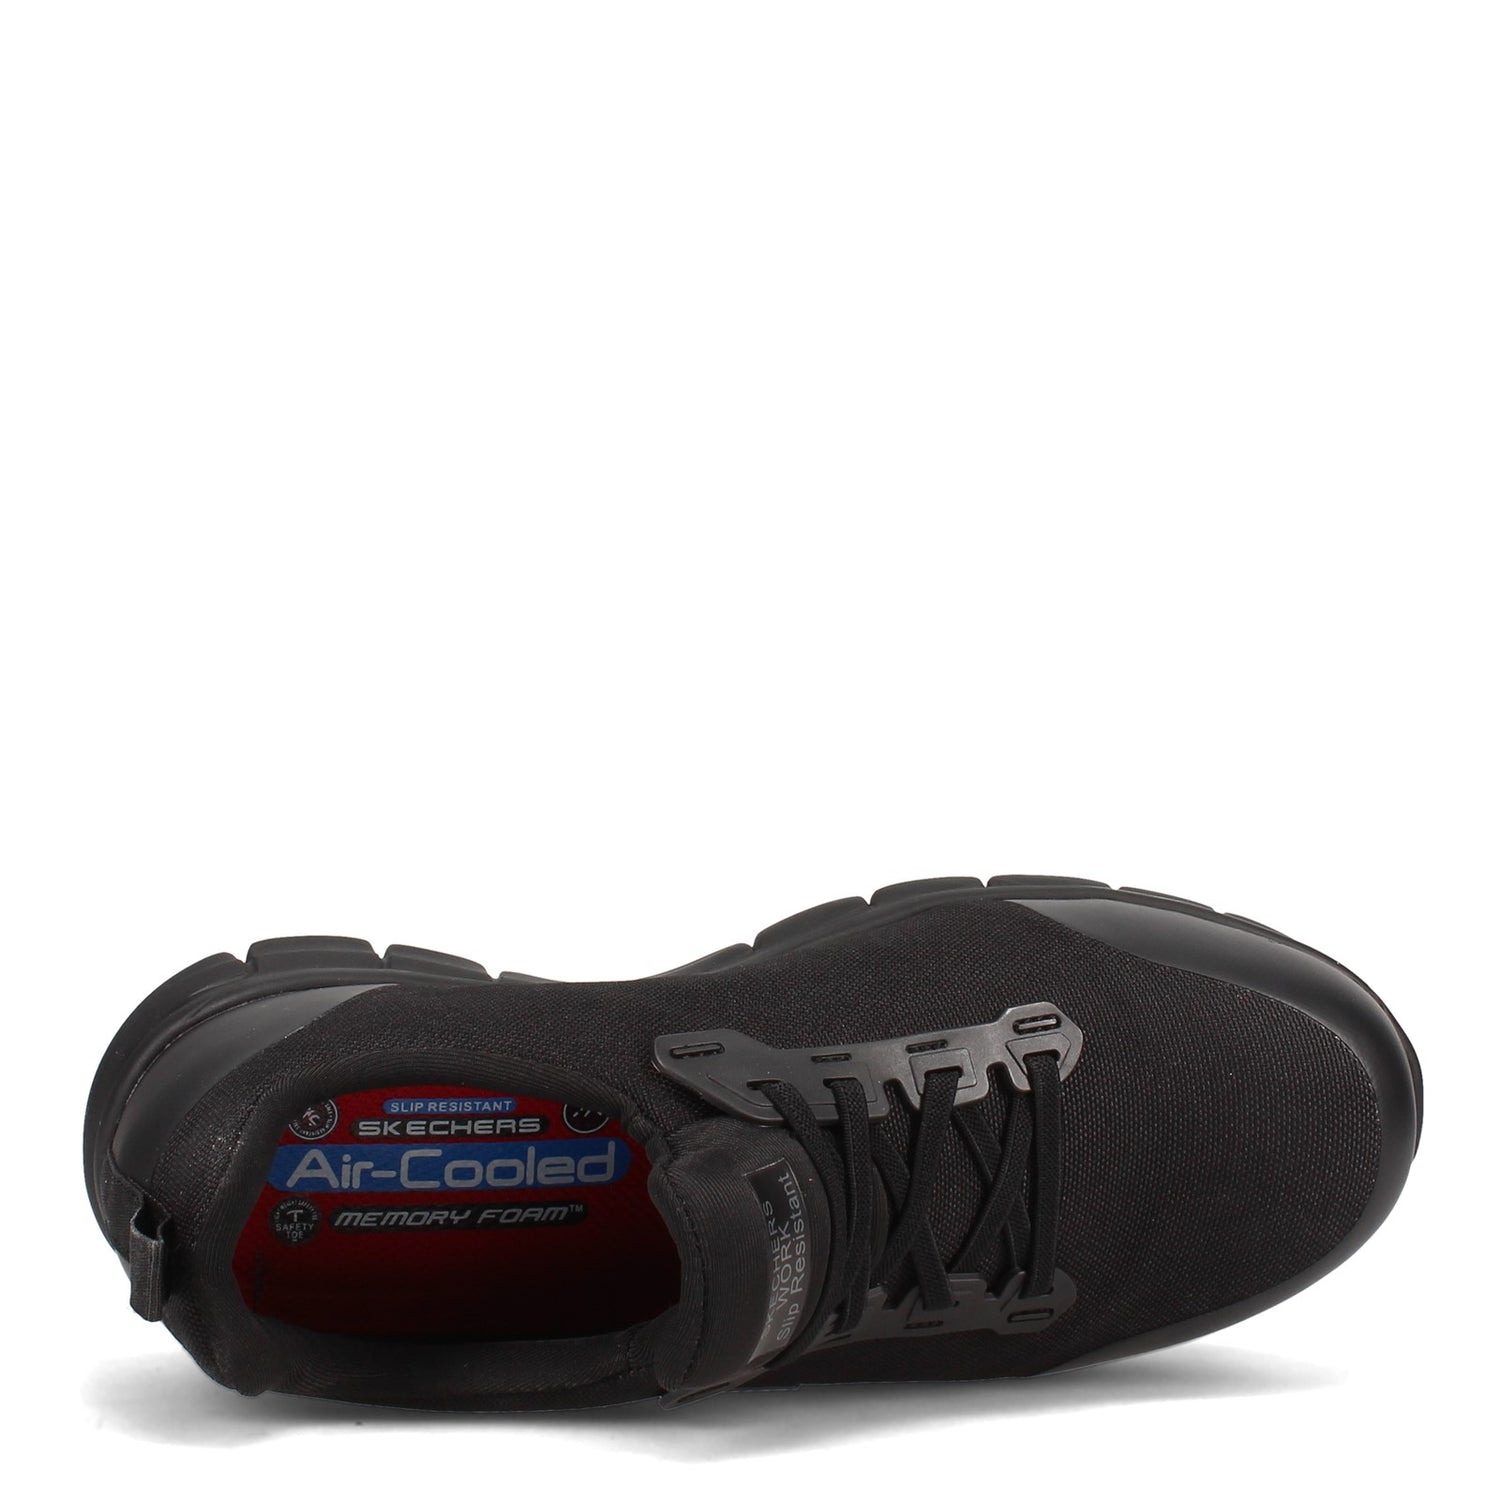 Peltz Shoes  Women's Skechers Work Sure Track - Irmo Alloy Toe Shoe BLACK 108003-BLK